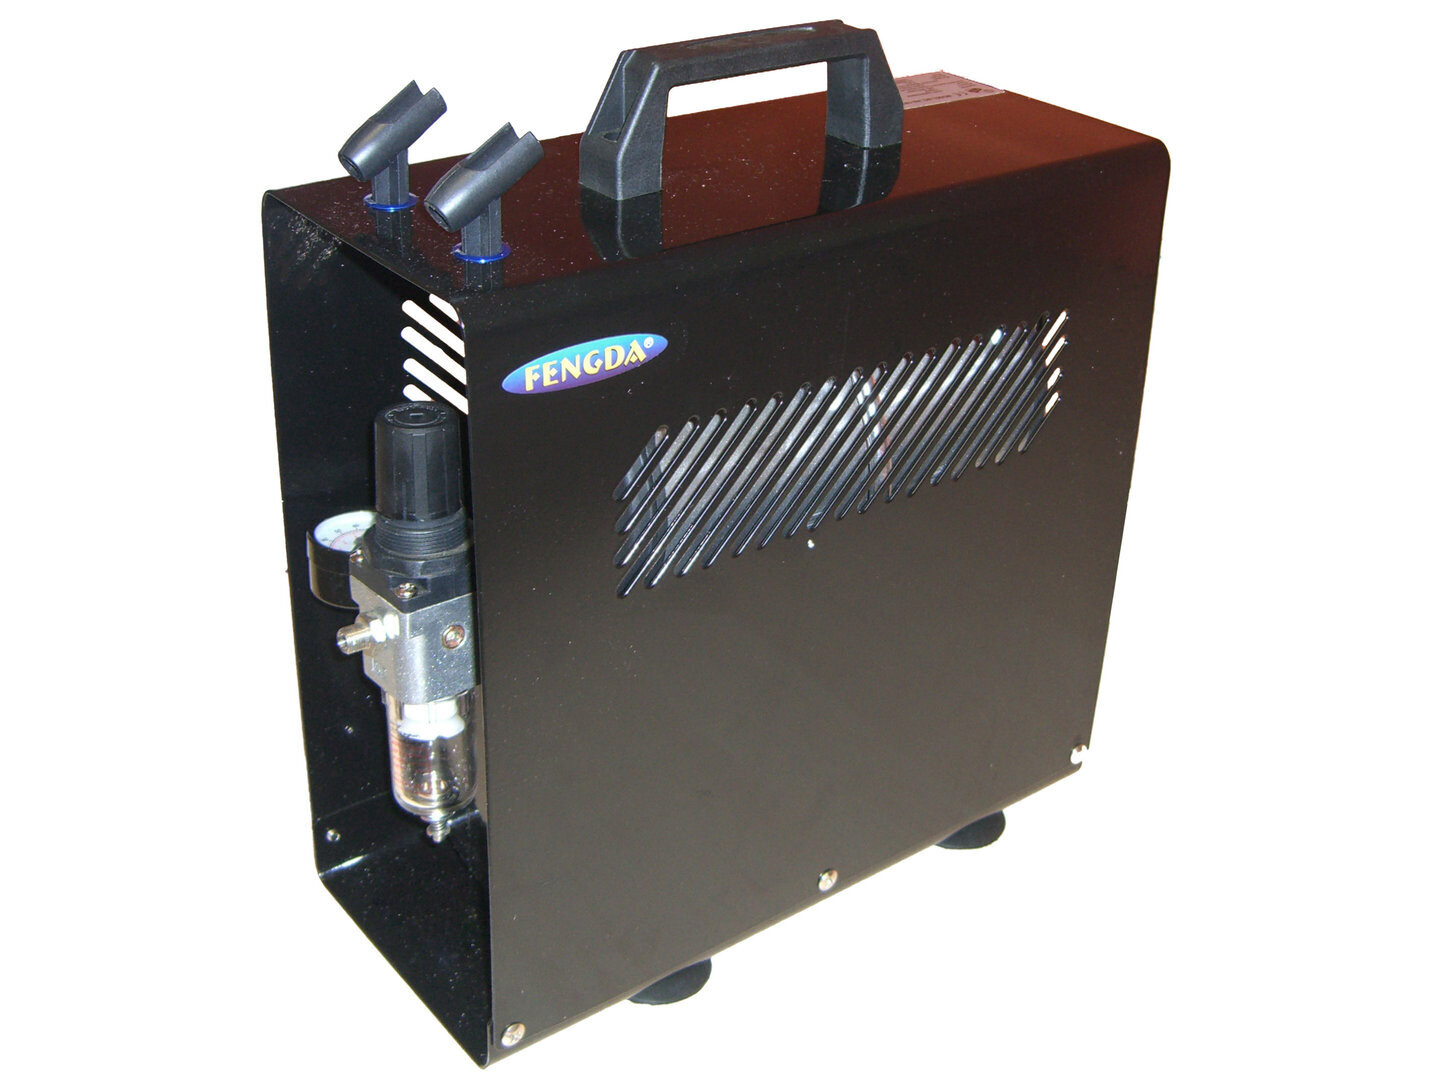 Airbrush Hobby Kompressor mit Druckbehälter und Deckel Fengda® AS-189 A